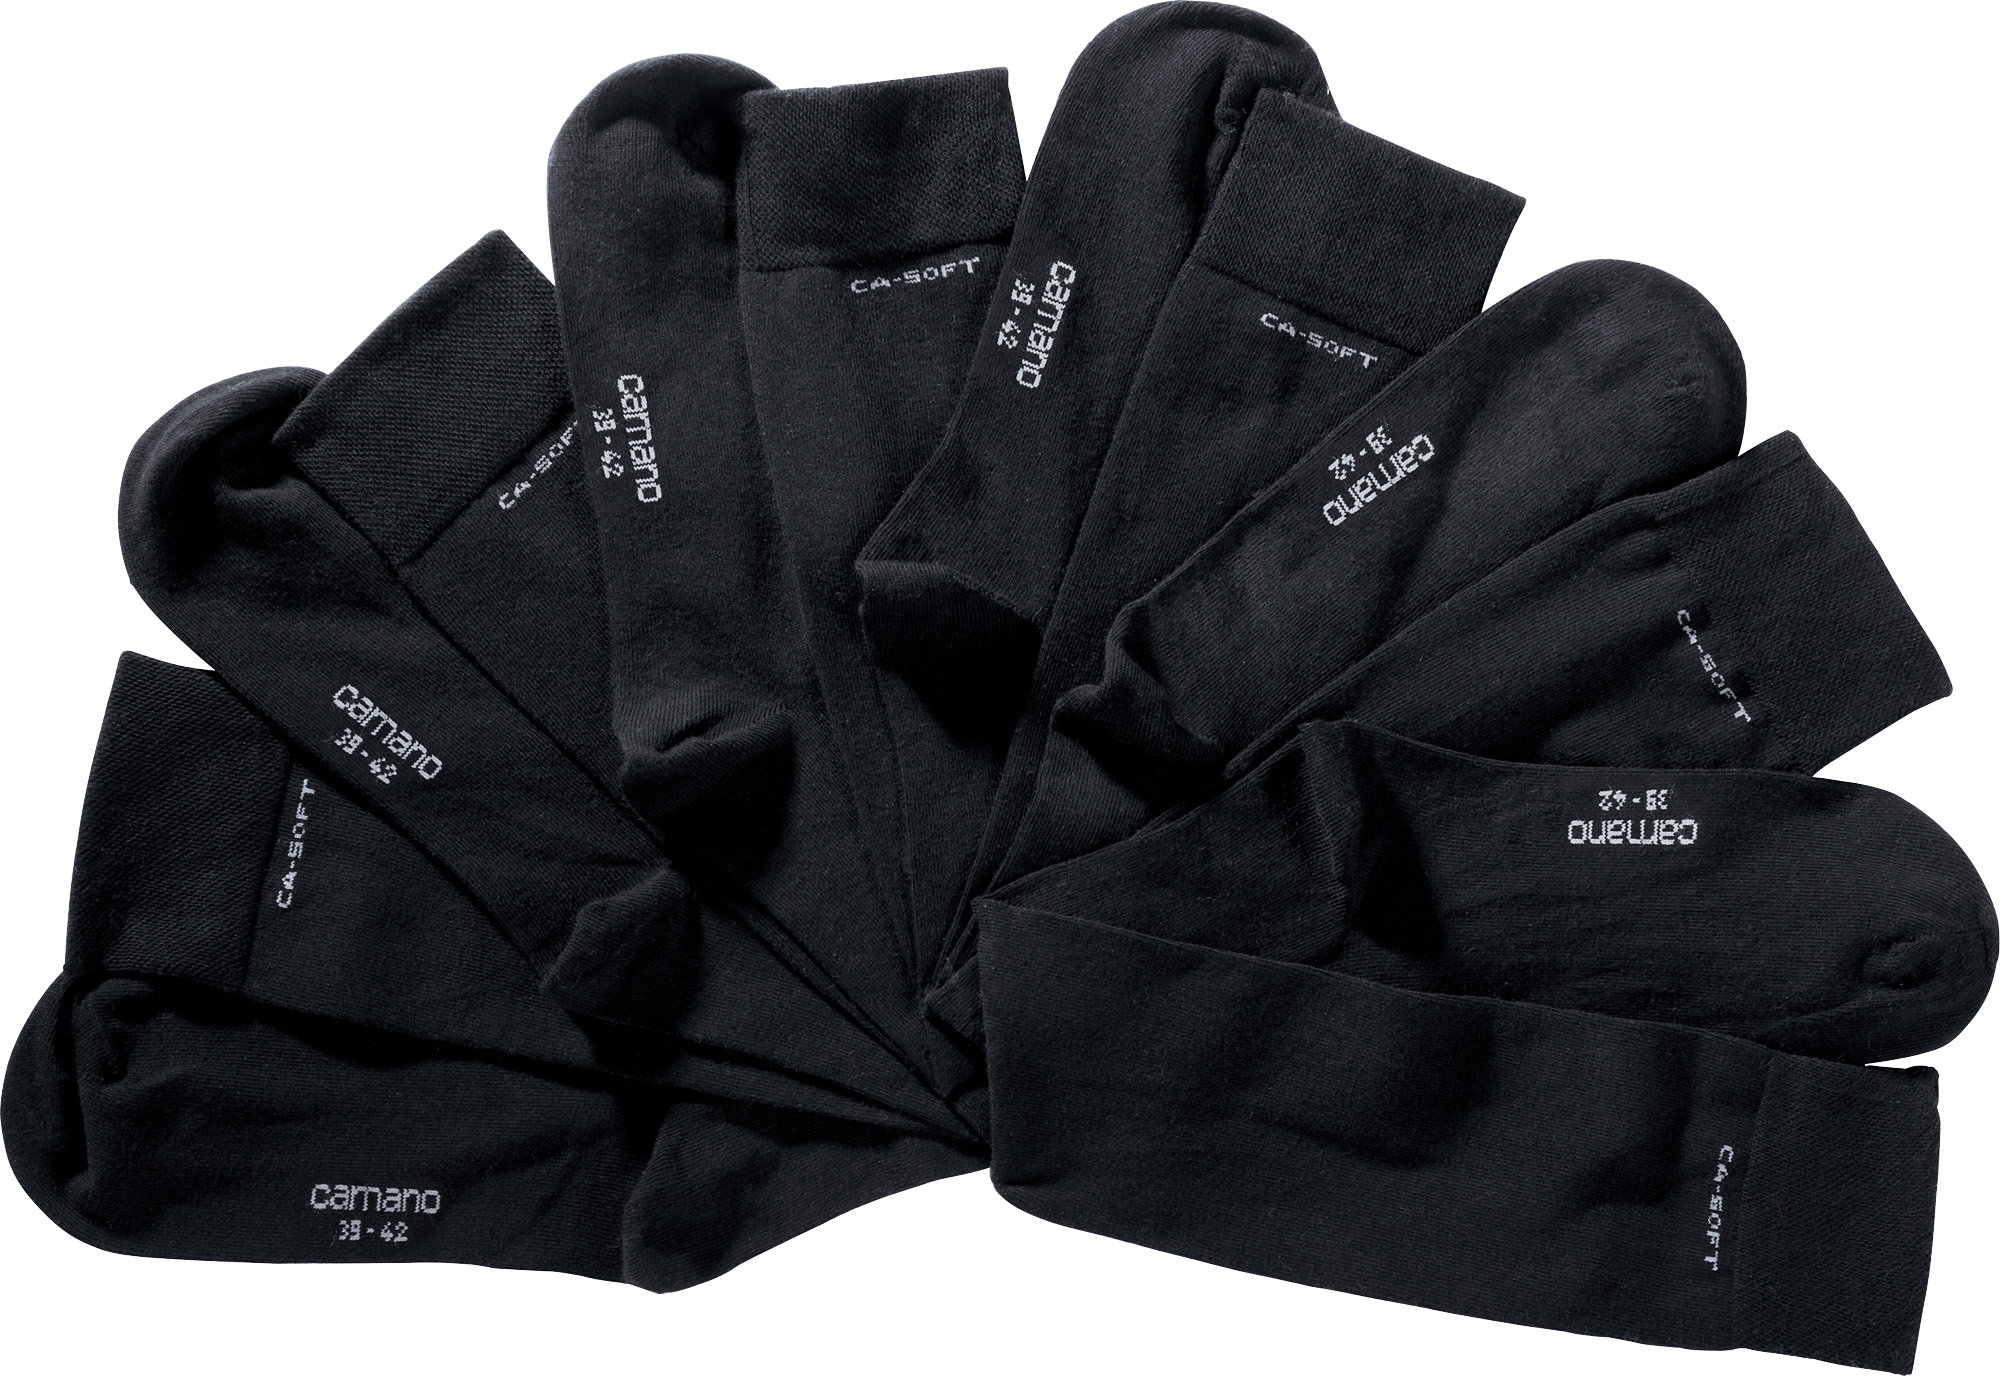 Носки camano Unisex Kniestrümpfe 3 шт ca soft, черный